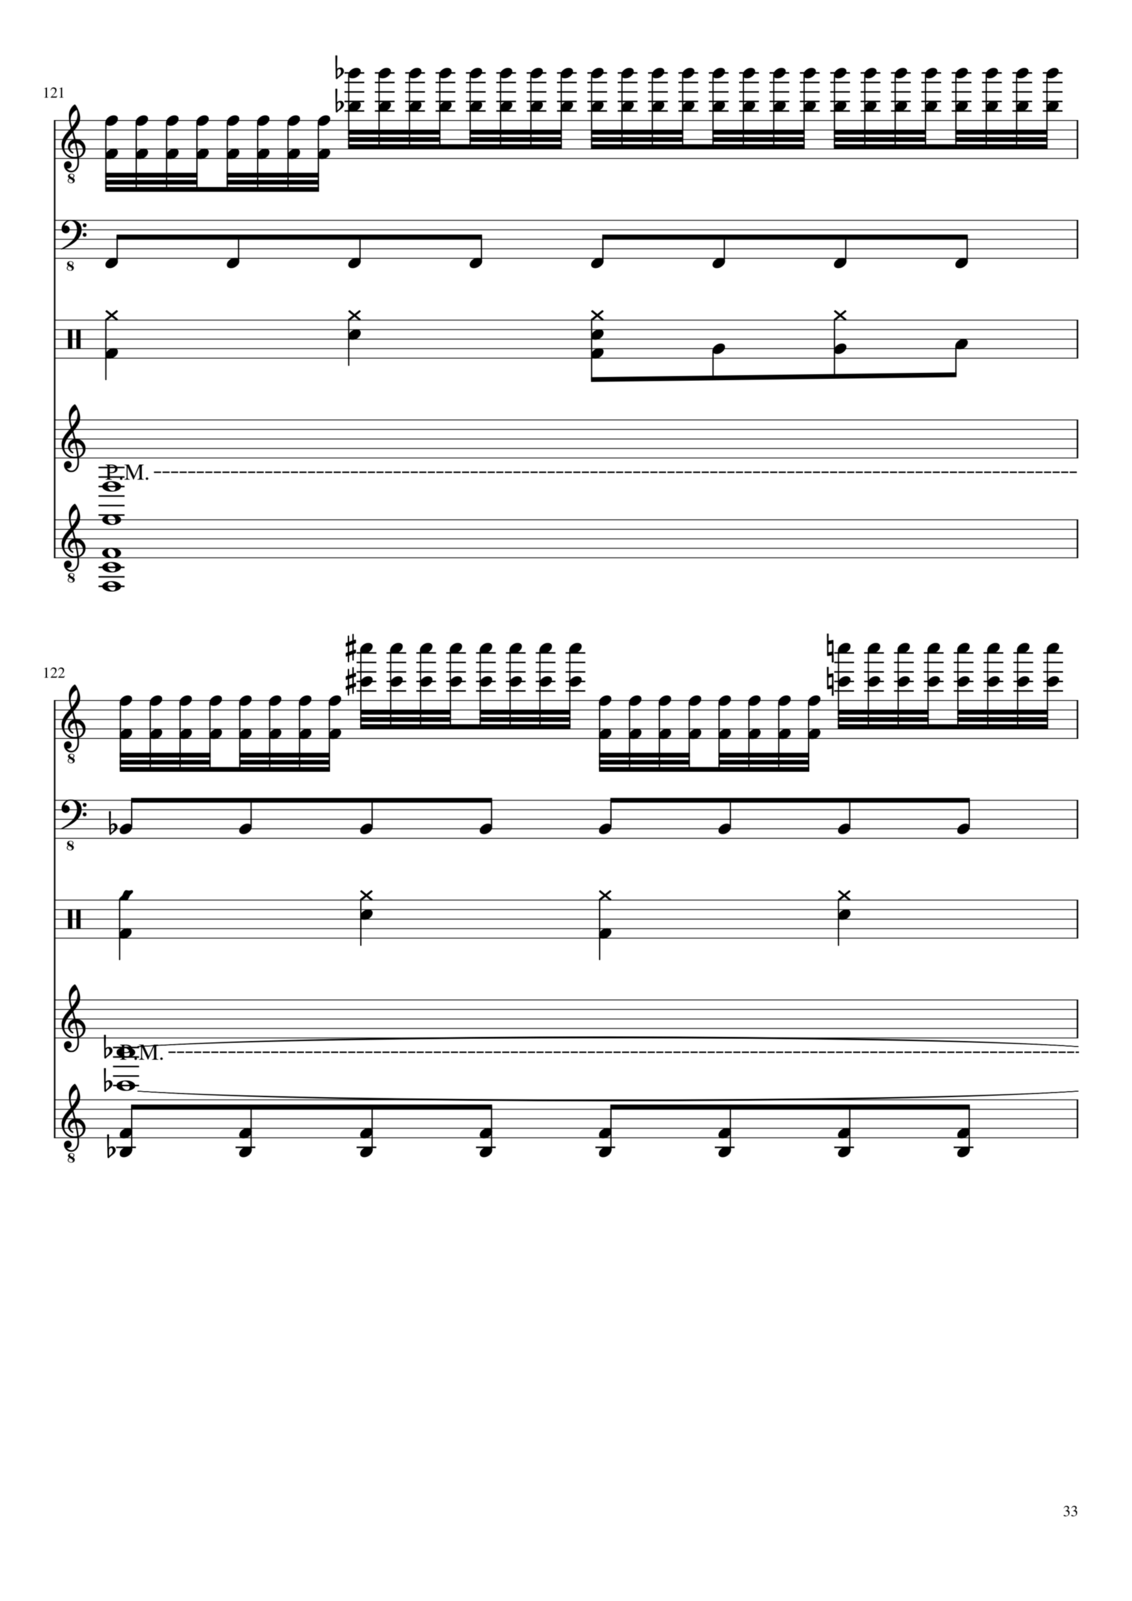 Vechnaya prizrachnaya vstrechnaya slide, Image 33